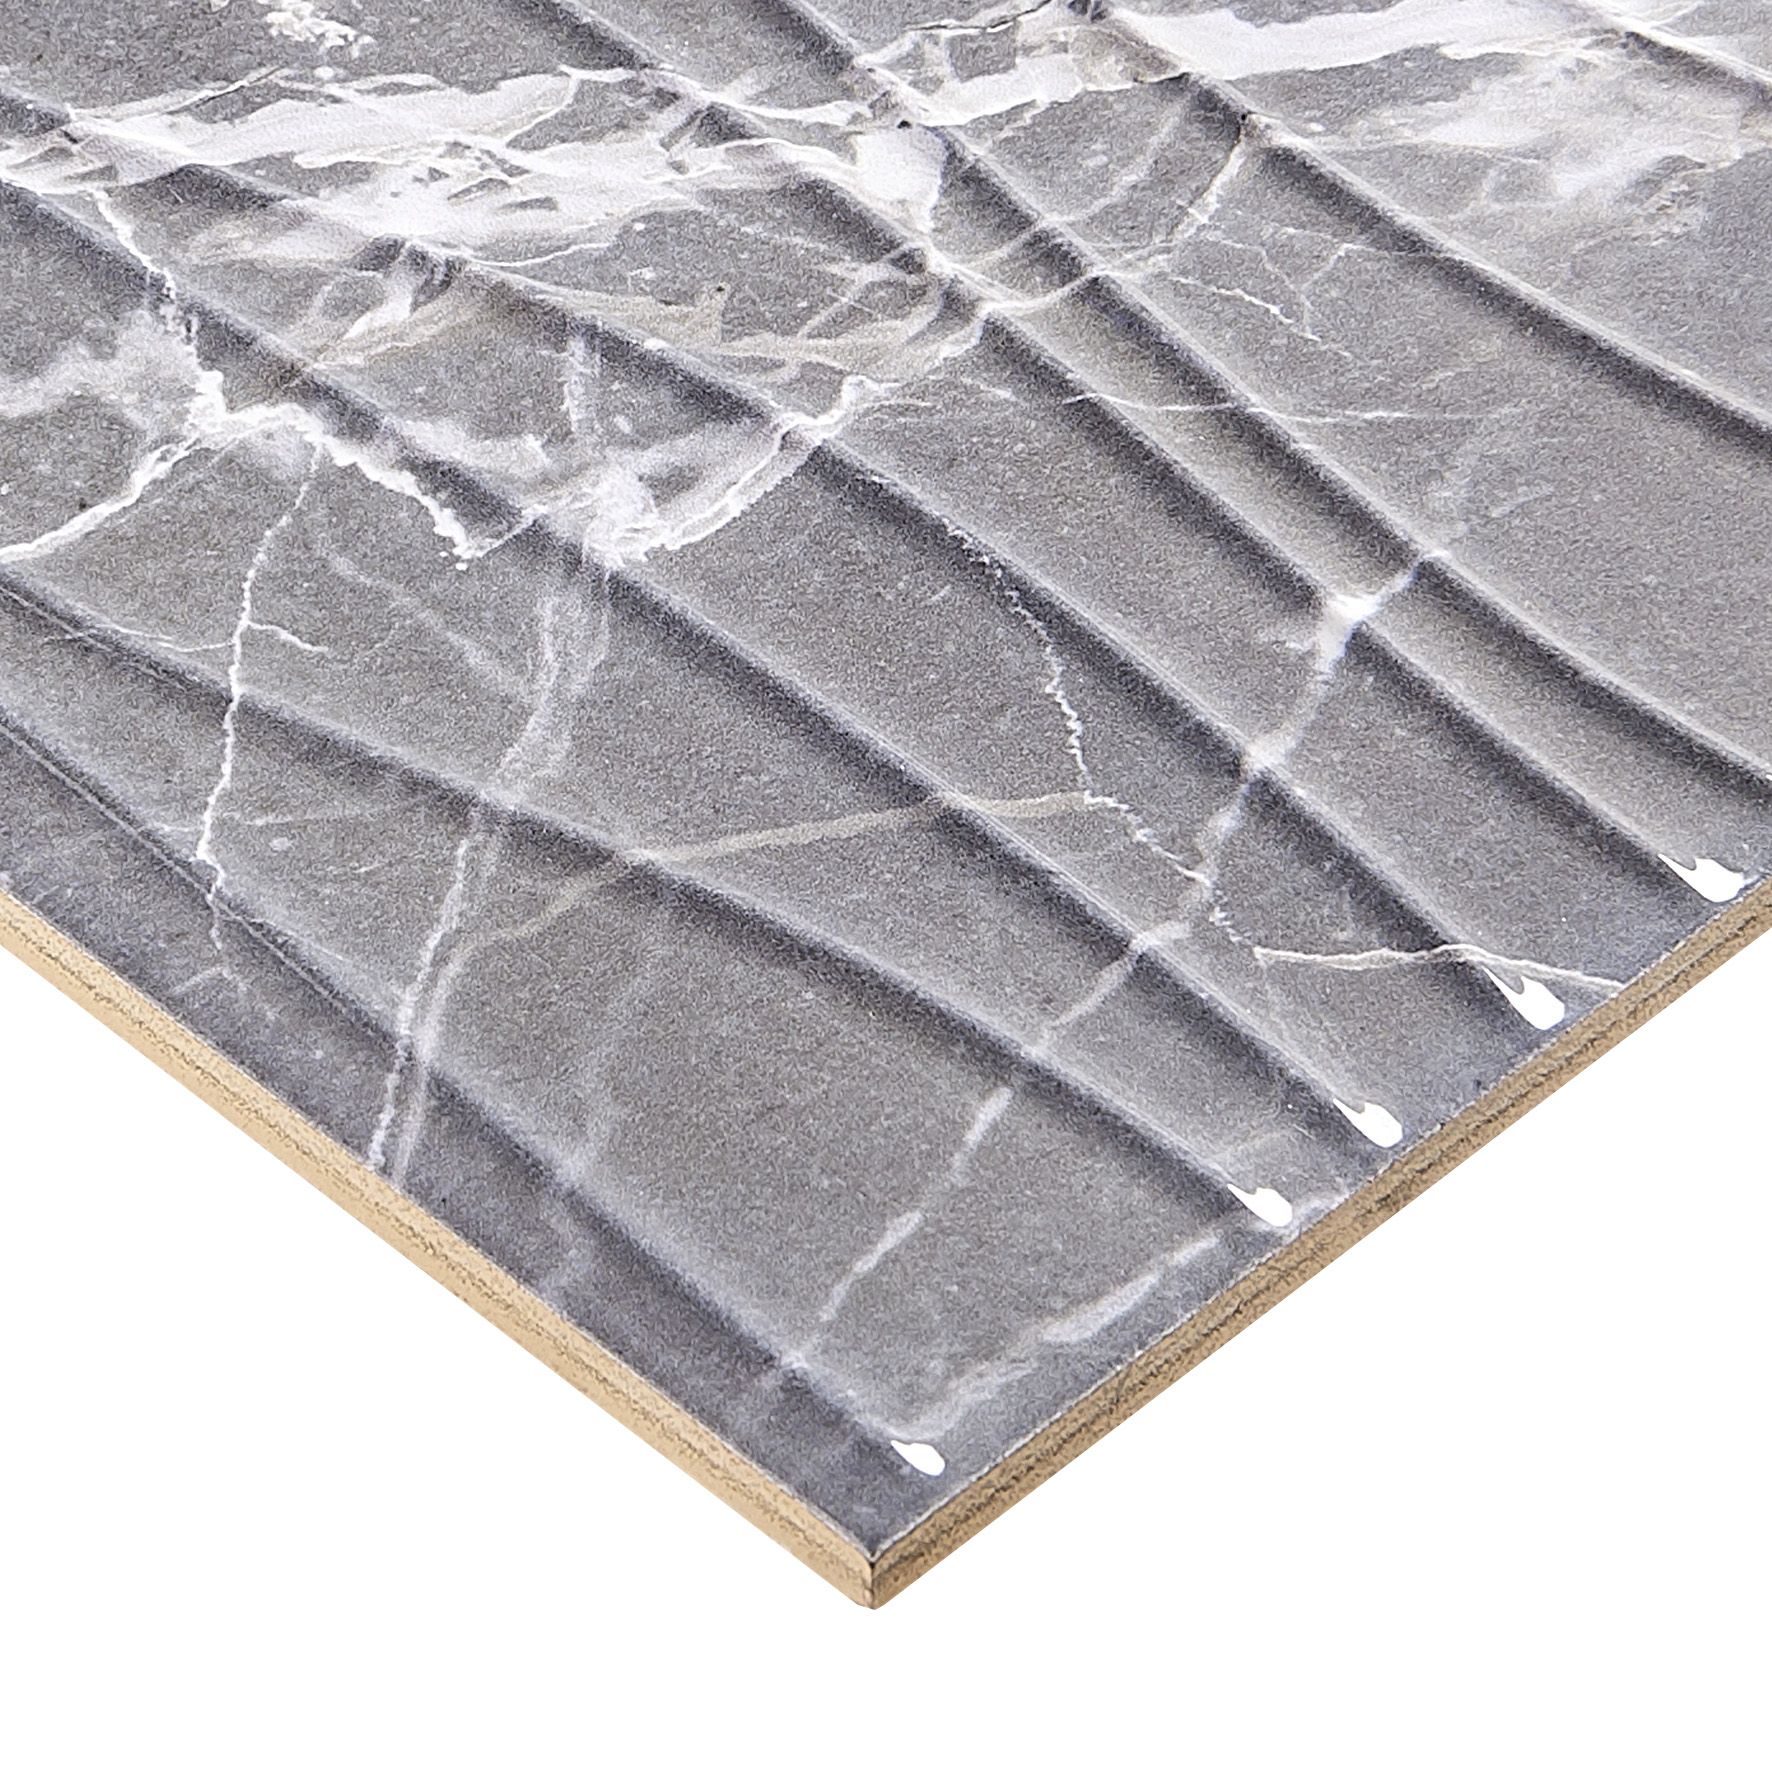 Elegance Grey 3D decor Marble effect Ceramic Indoor Tile, (L)600mm (W)200mm, 0.84m²